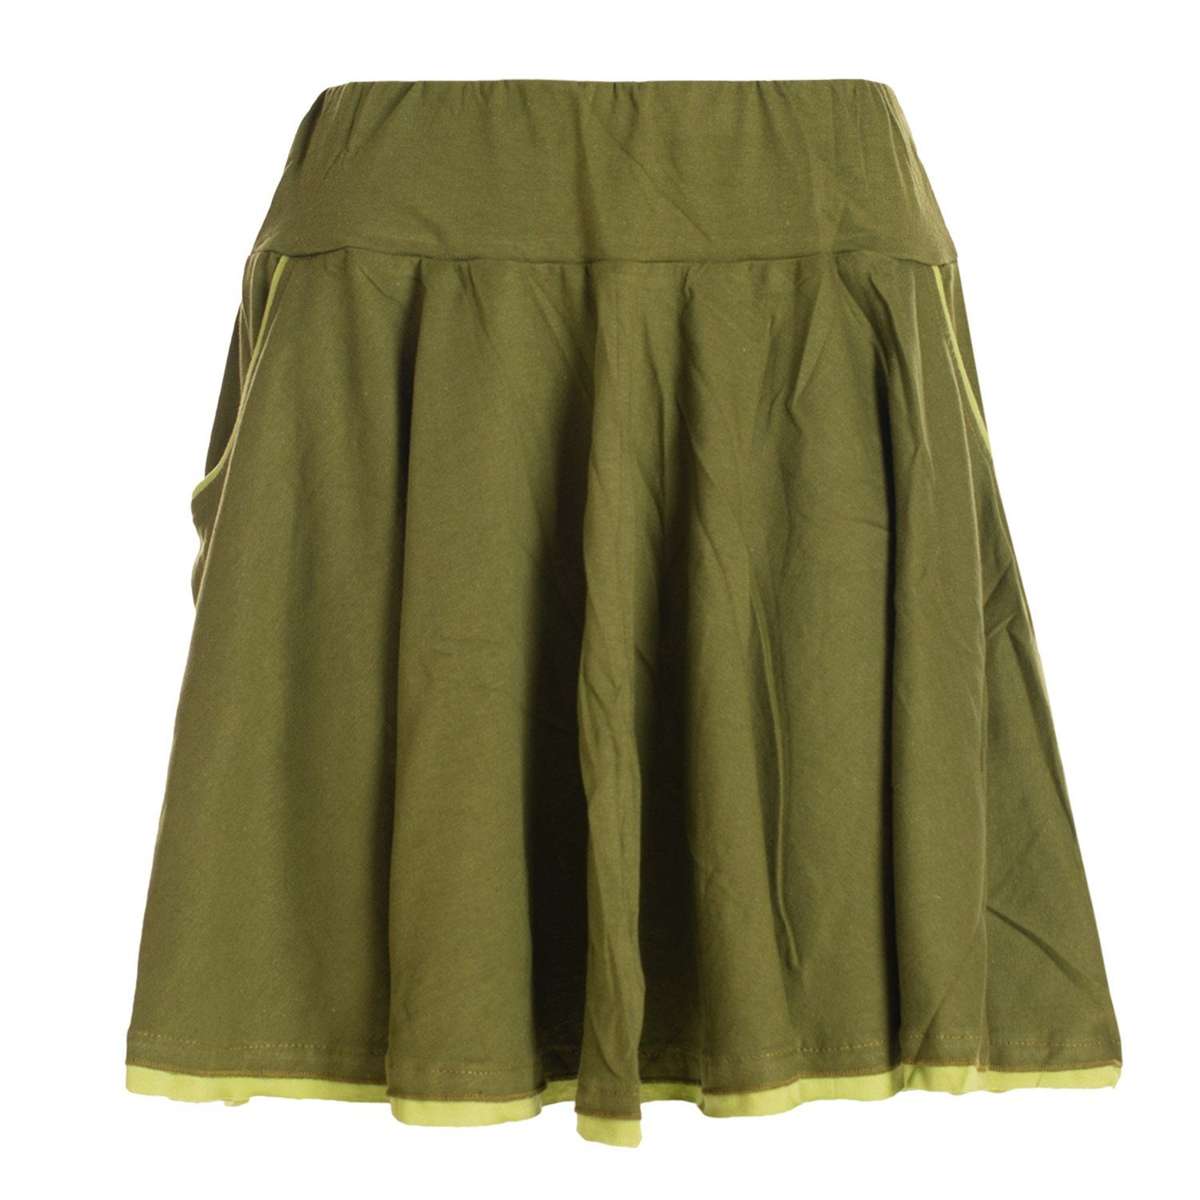 Мини-юбка двухцветная короткая женская юбка мини-юбка танцевальная юбка хлопковая юбка Гоа